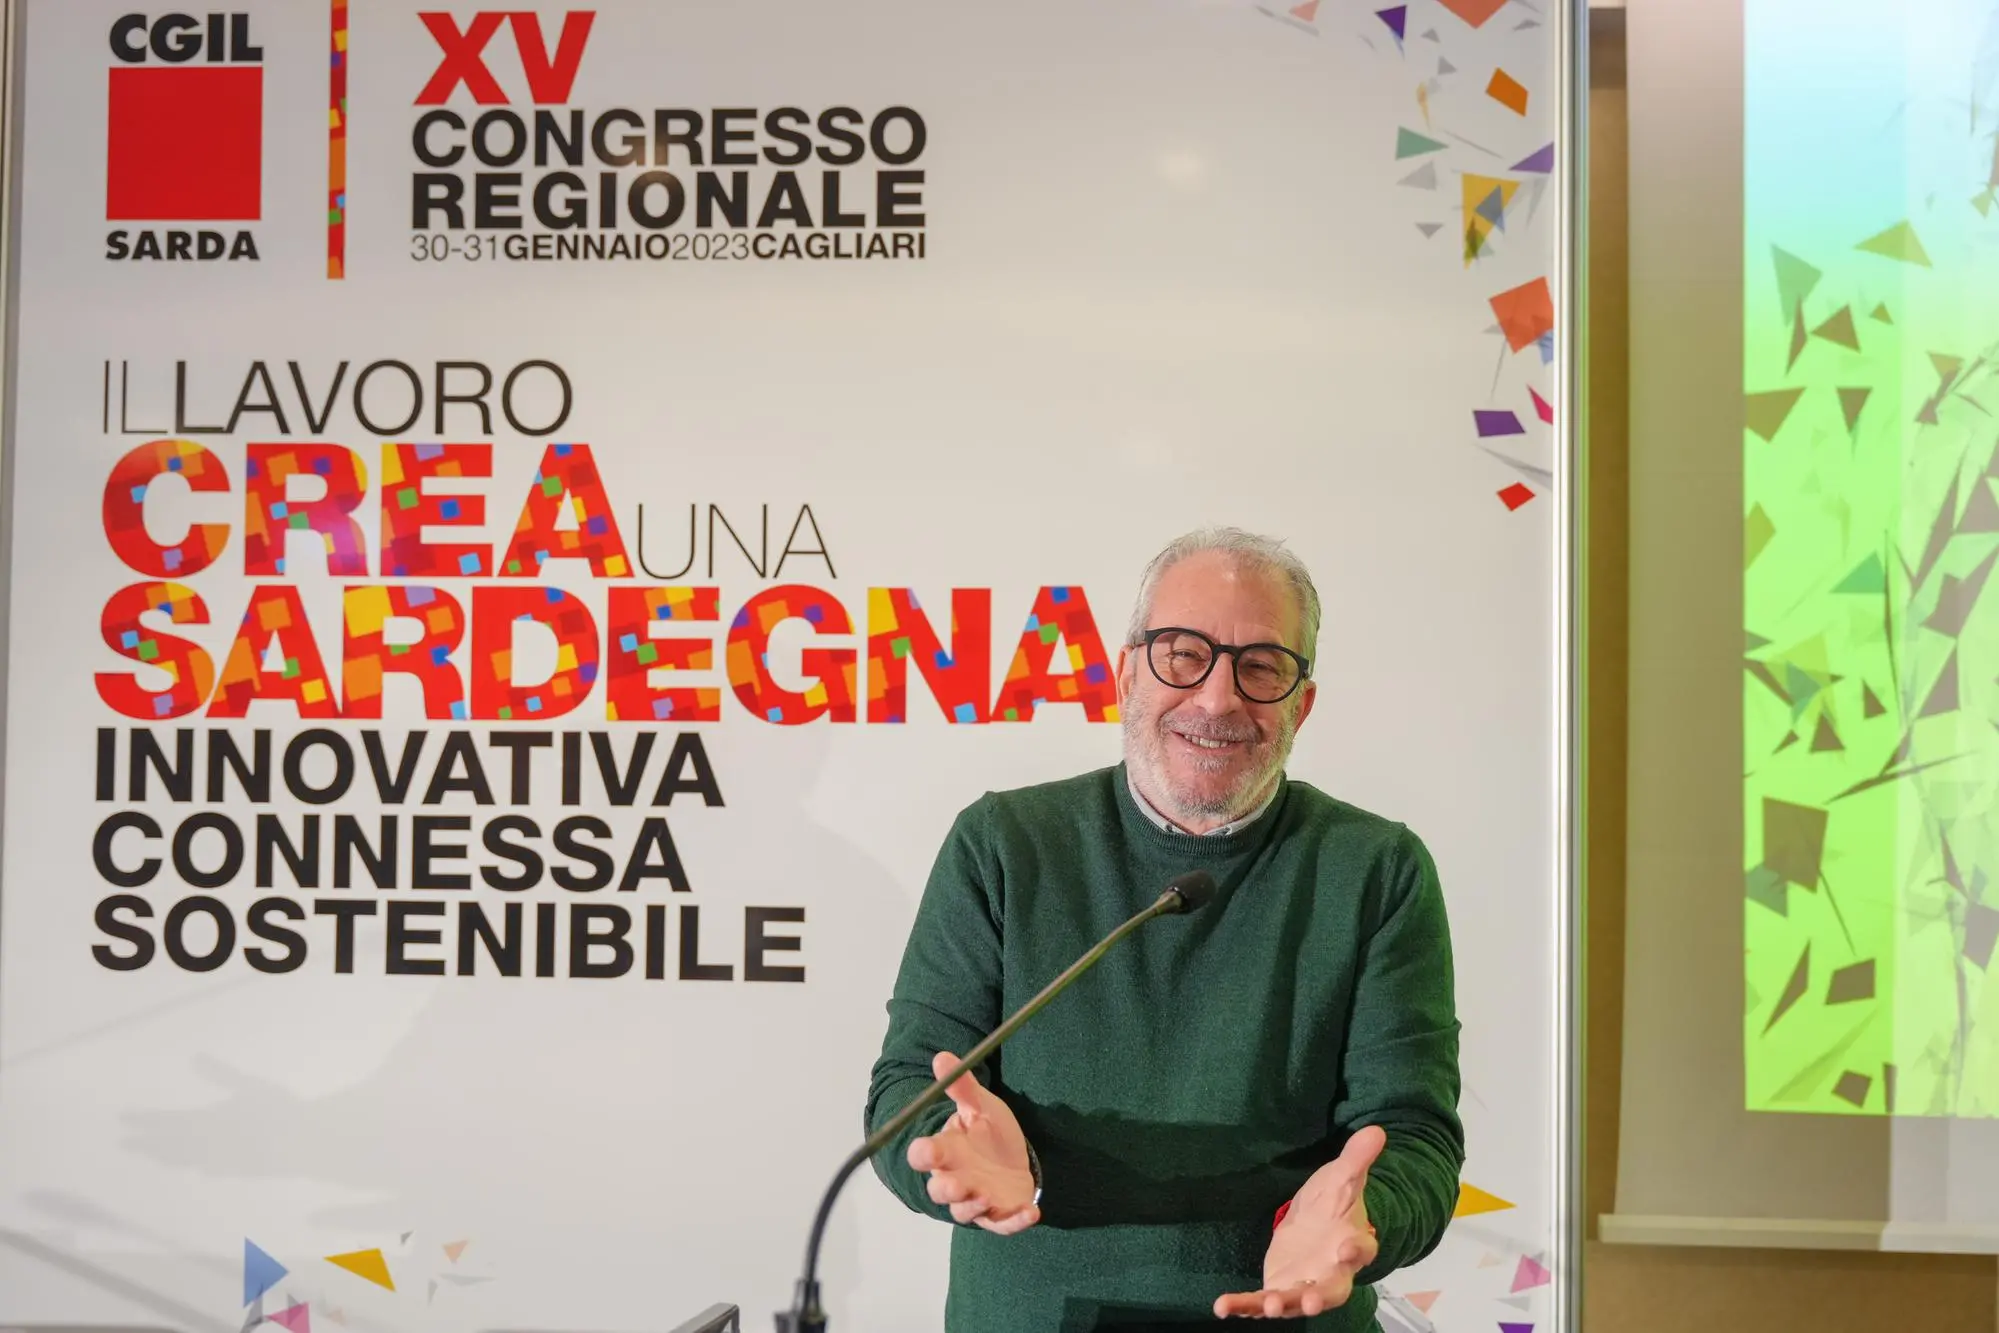 Фаусто Дуранте, новый секретарь Сардинского CGIL (предоставлено)